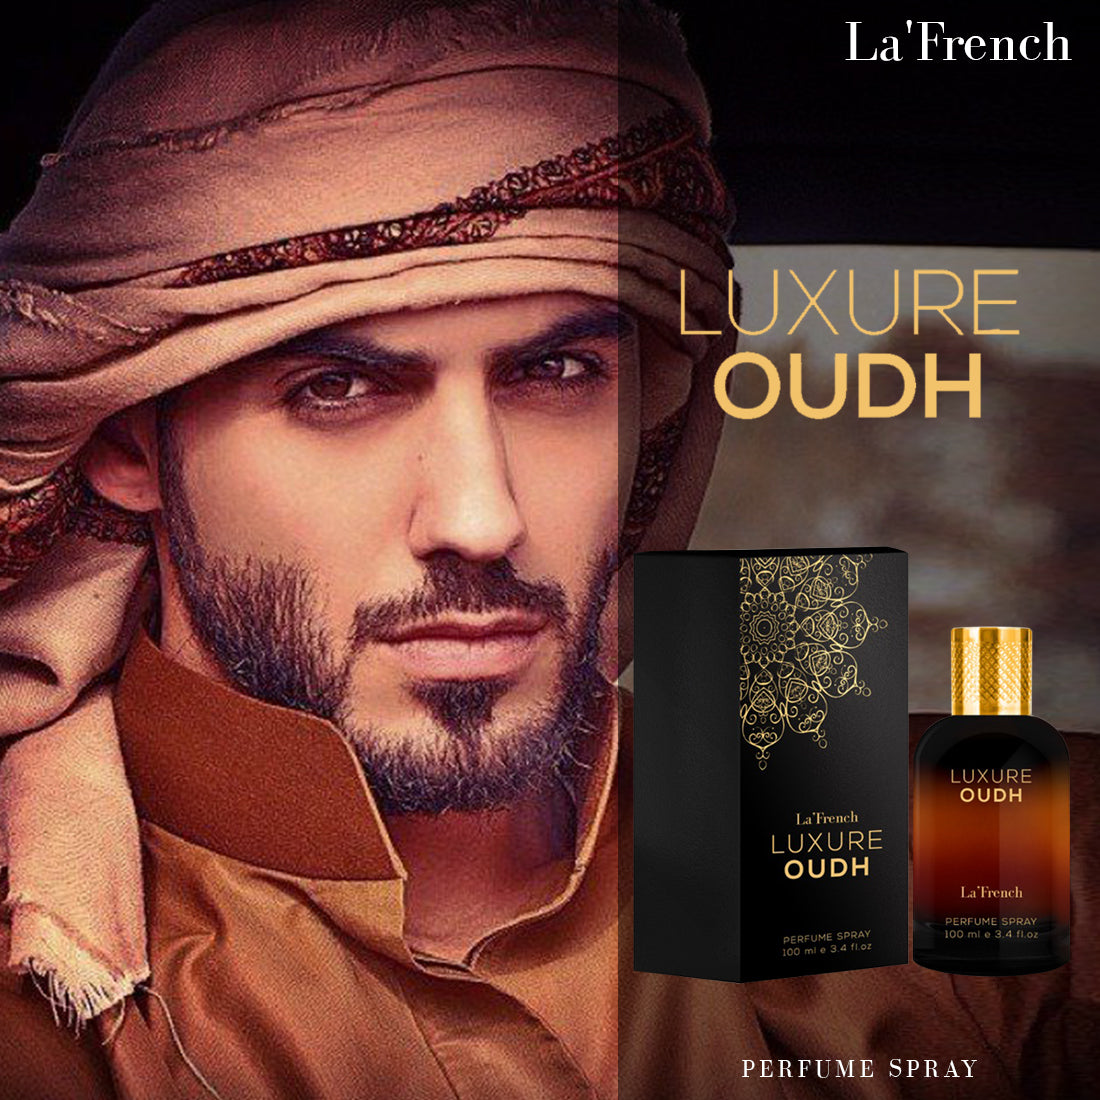 Luxure Oudh Perfume